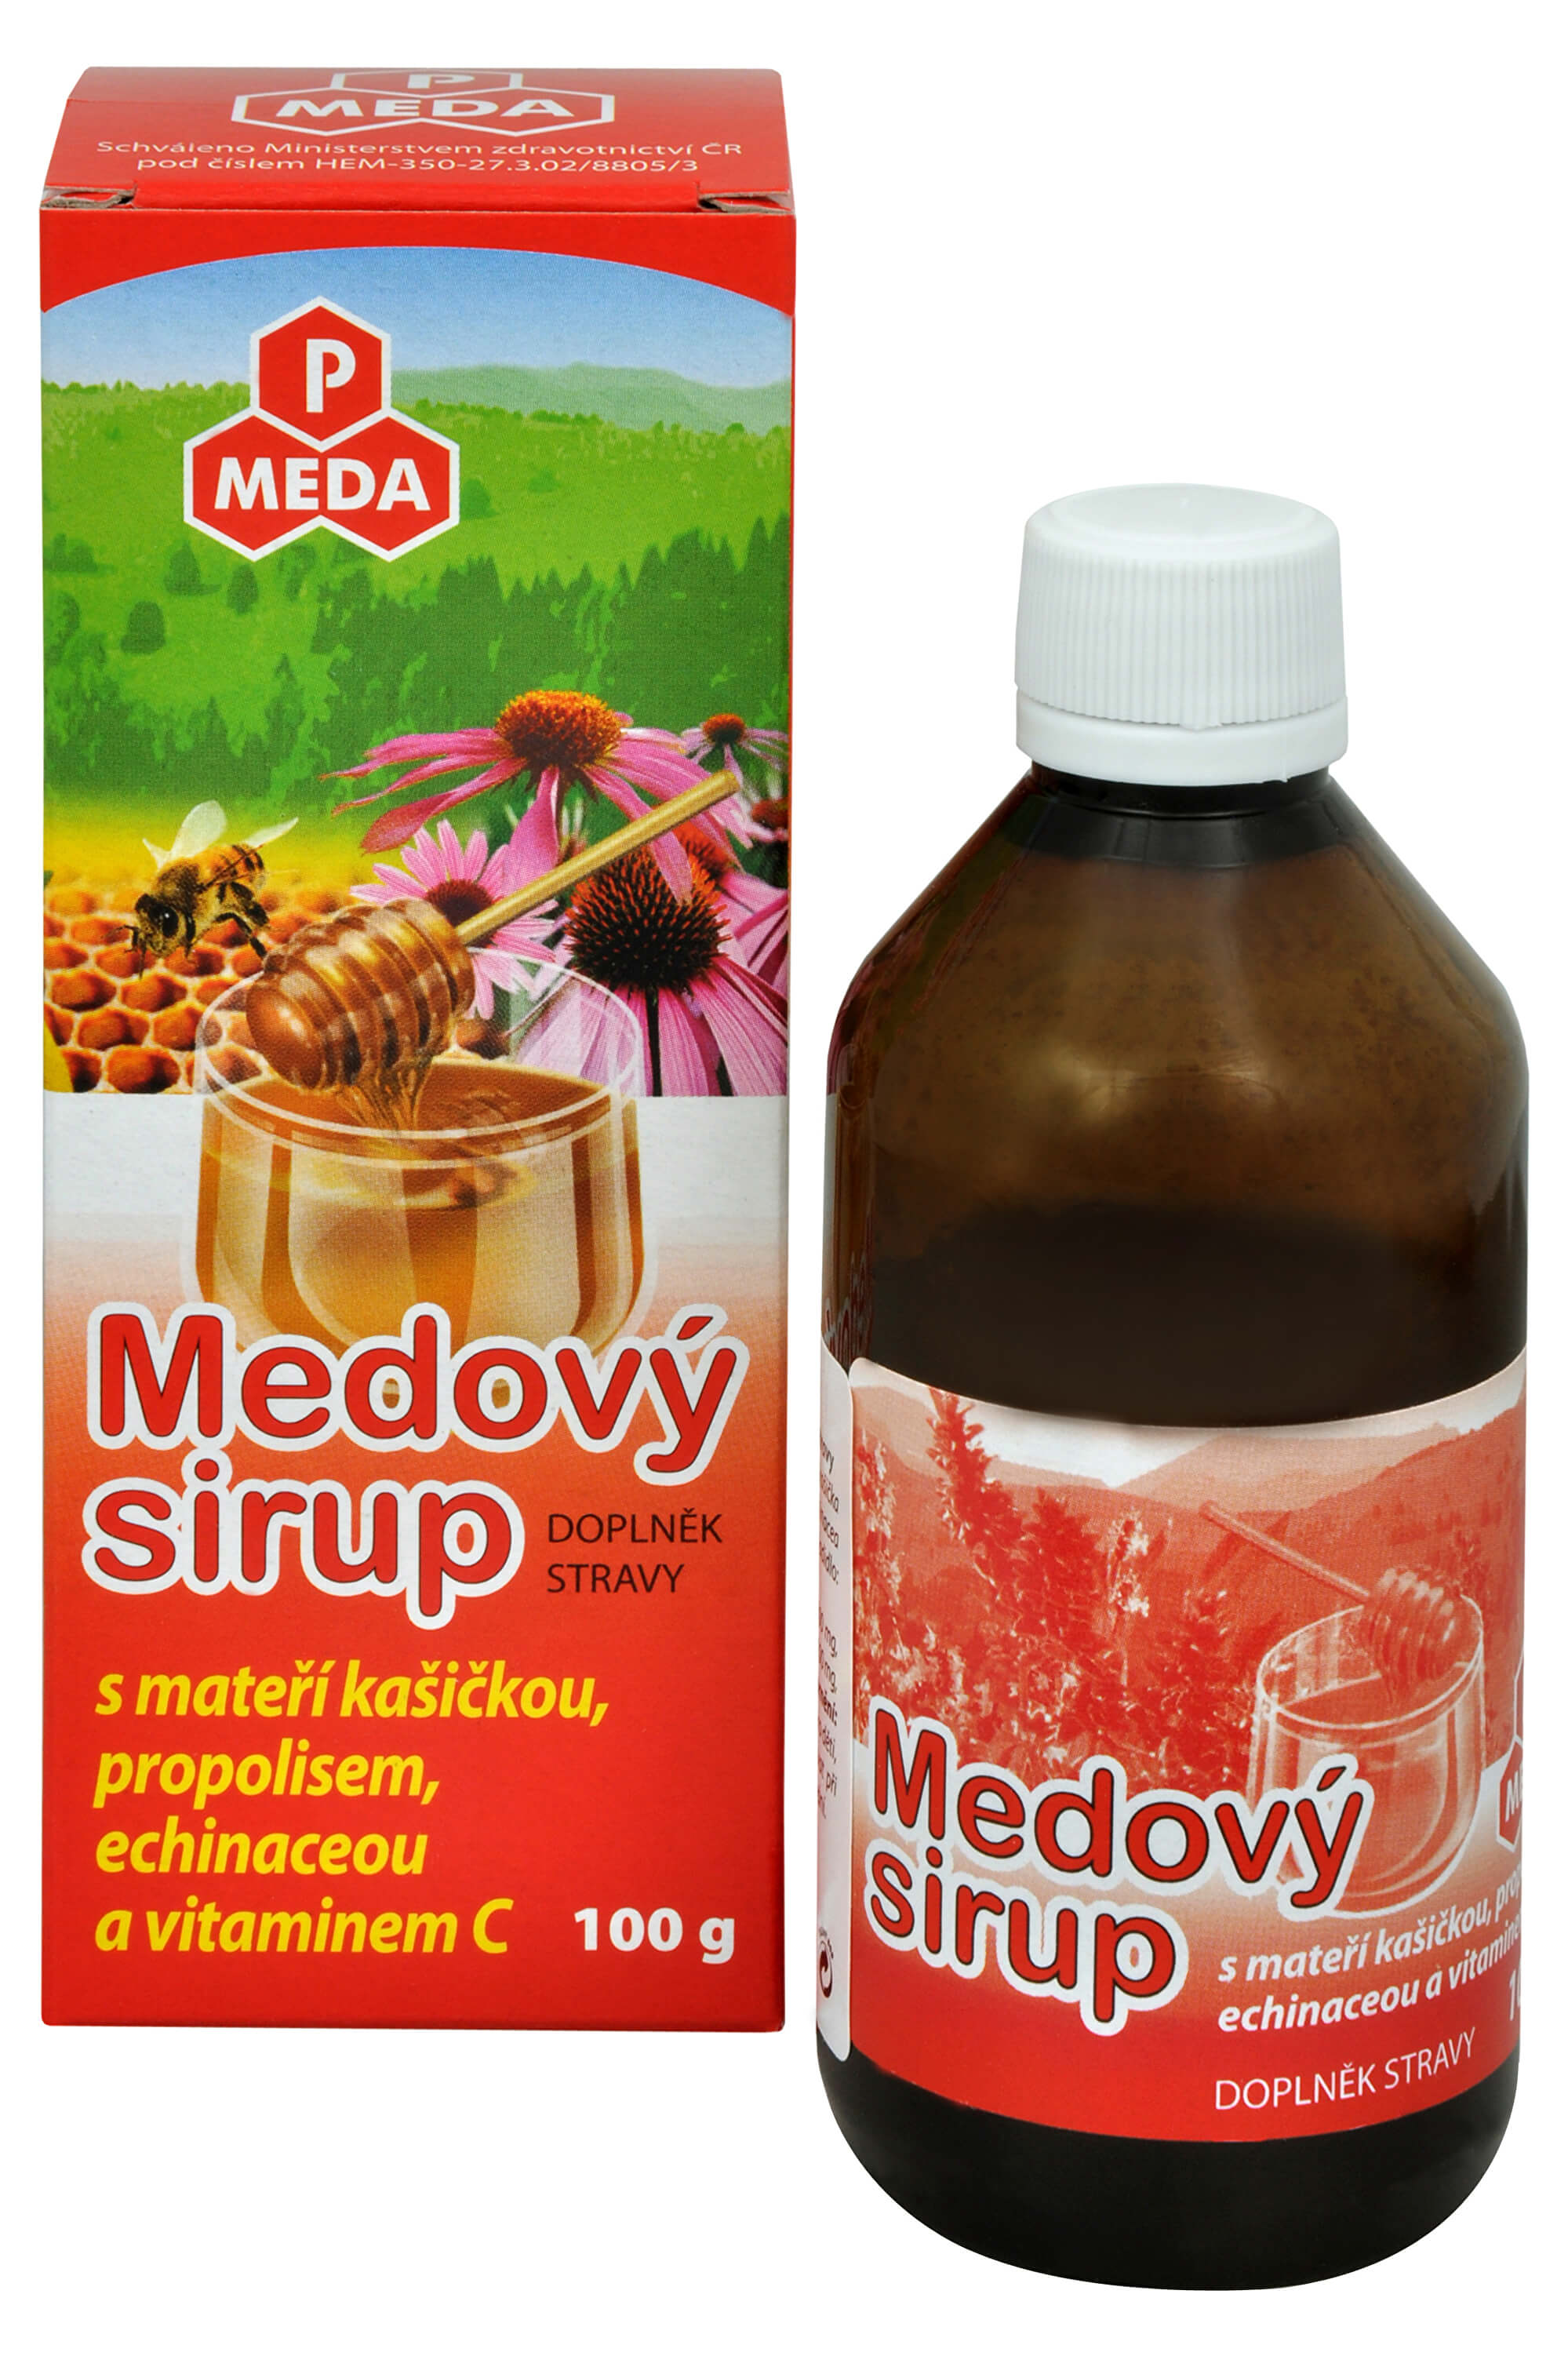 Zobrazit detail výrobku Purus Meda PM Medový sirup s mateří kašičkou, propolisem, echinaceou a vitamínem C 100 g + 2 měsíce na vrácení zboží